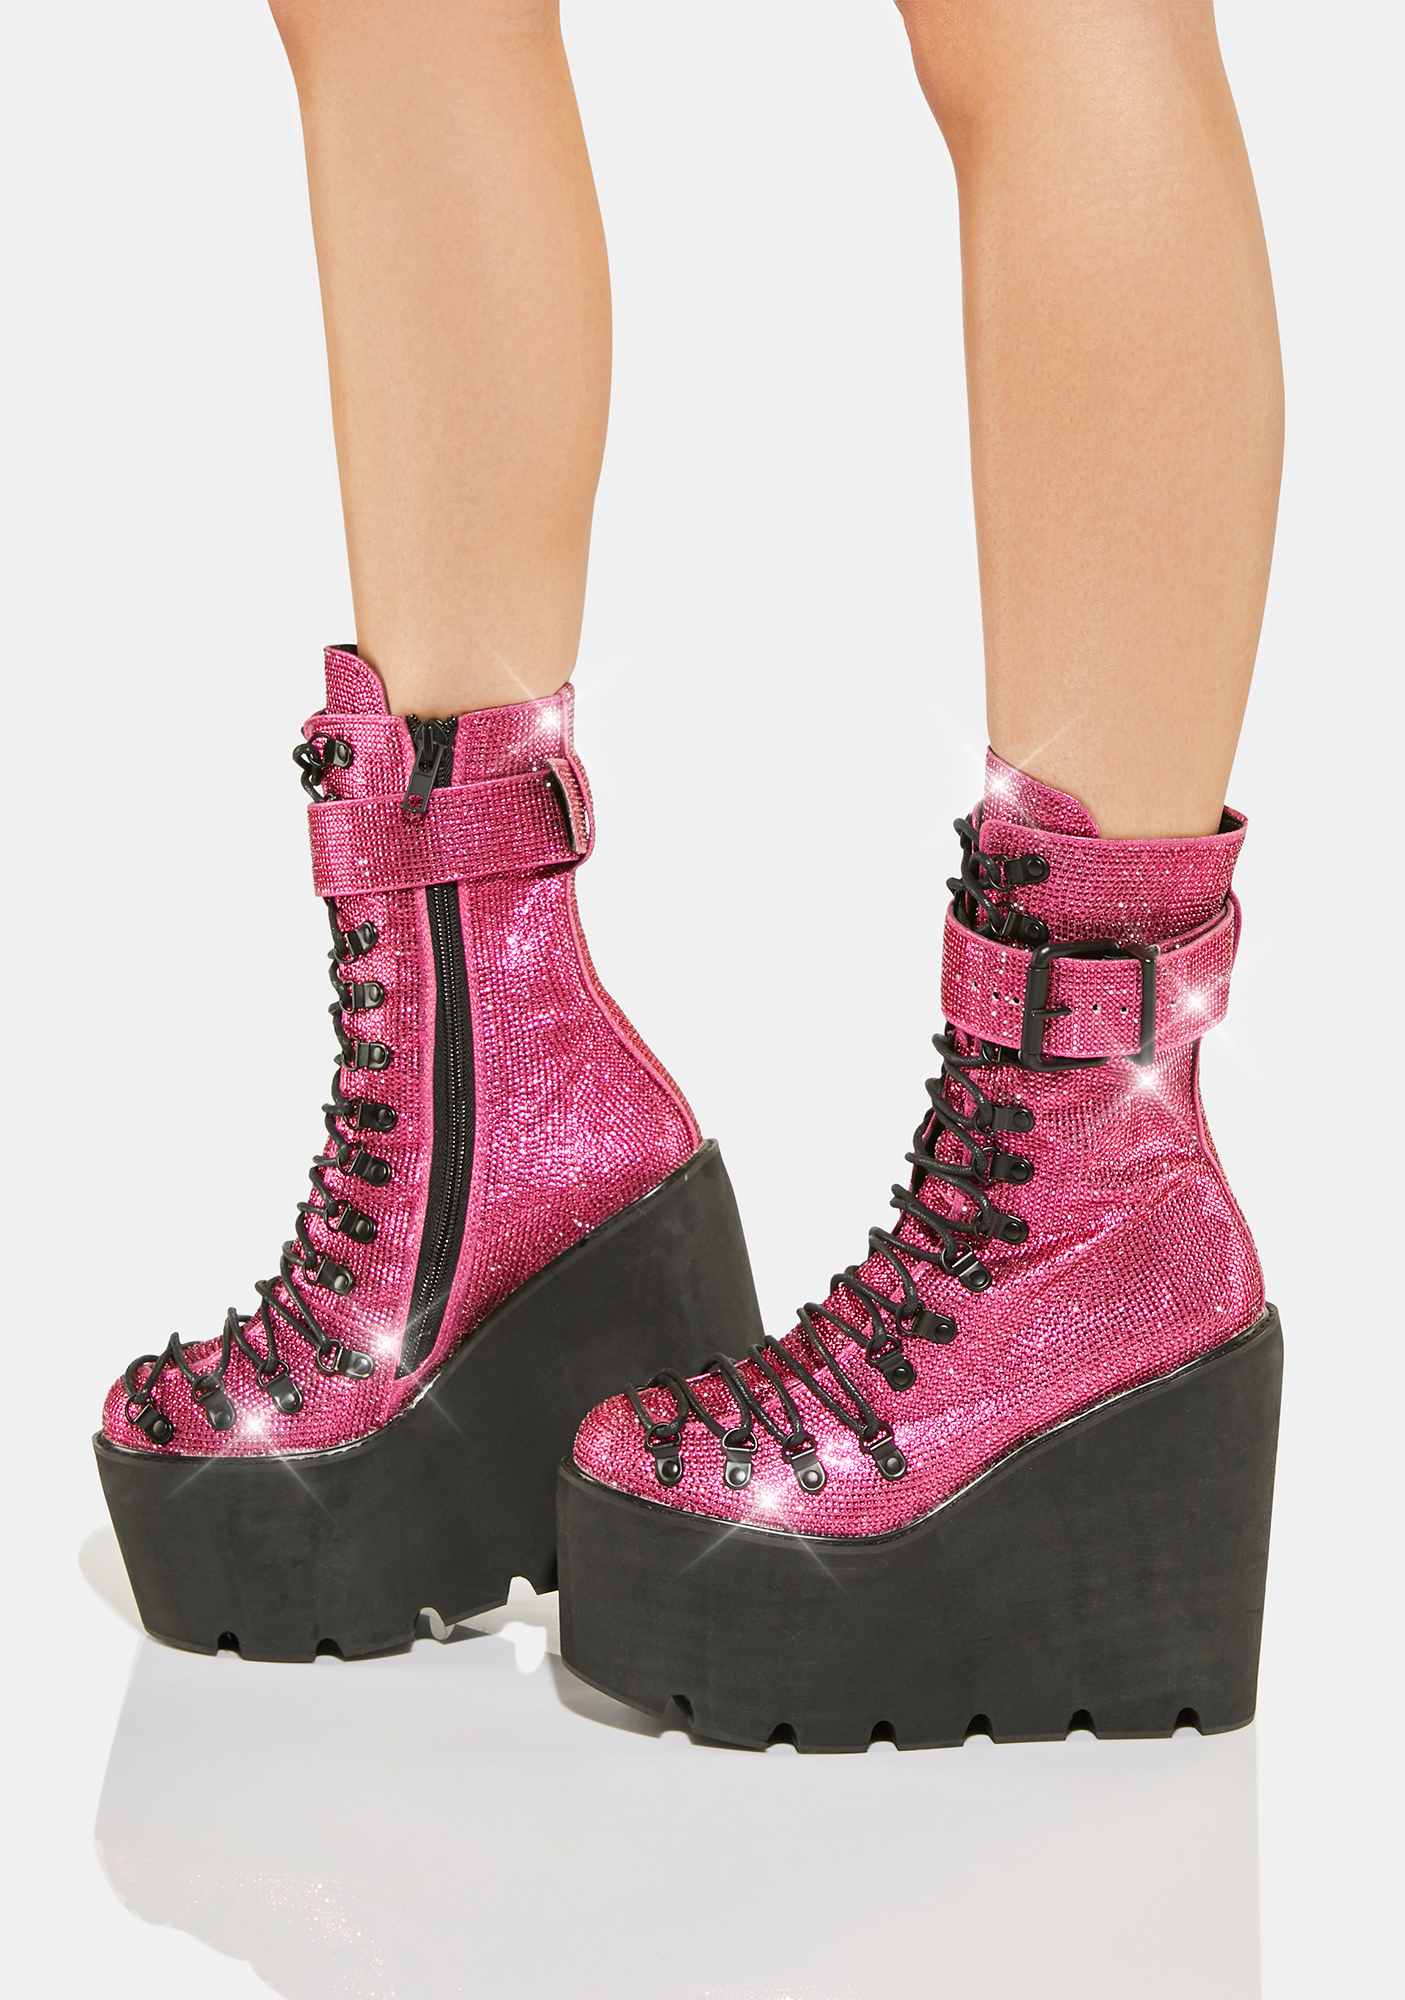 Club Exx Rhinestone Wedge Platform Boots - Pink/Black | Dolls Kill